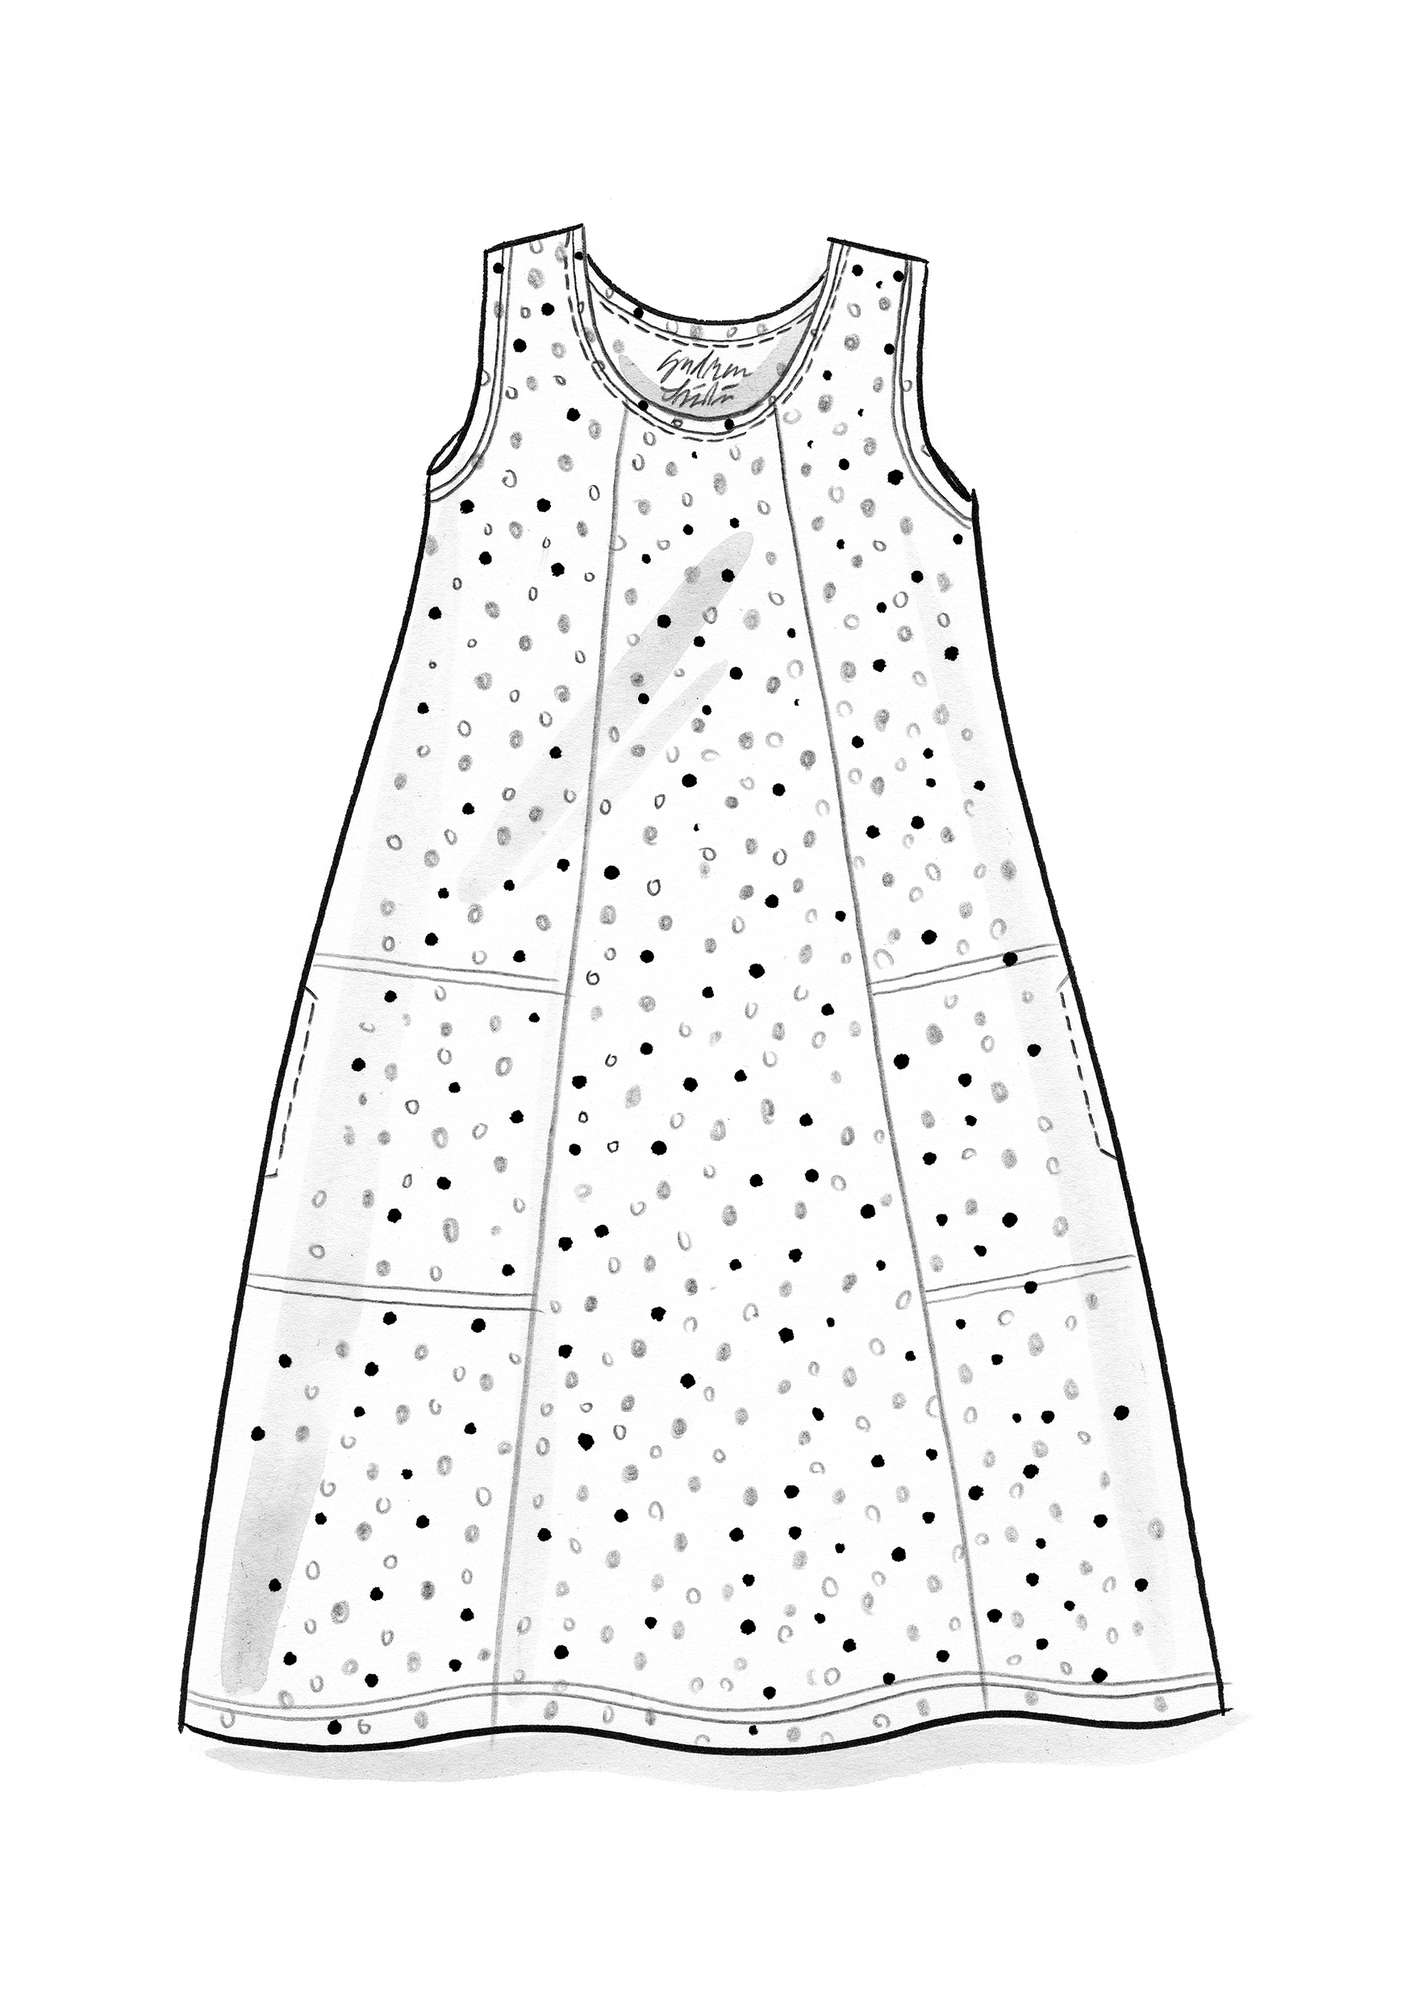 Tricot jurk  Iliana  van biologisch katoen/elastaan lavendel/dessin